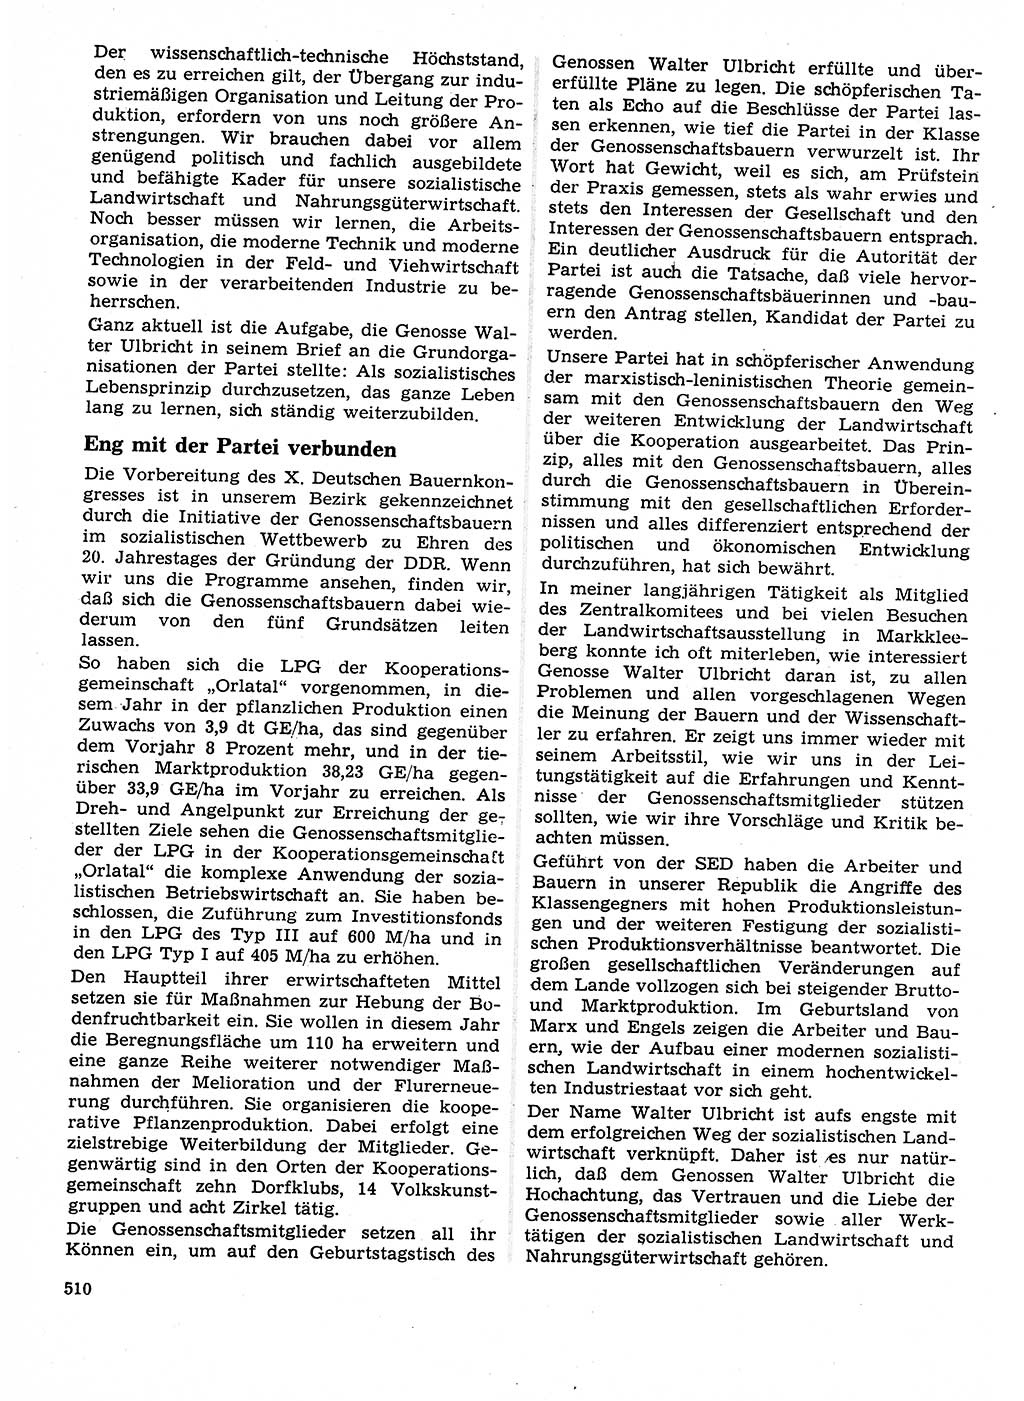 Neuer Weg (NW), Organ des Zentralkomitees (ZK) der SED (Sozialistische Einheitspartei Deutschlands) für Fragen des Parteilebens, 23. Jahrgang [Deutsche Demokratische Republik (DDR)] 1968, Seite 510 (NW ZK SED DDR 1968, S. 510)